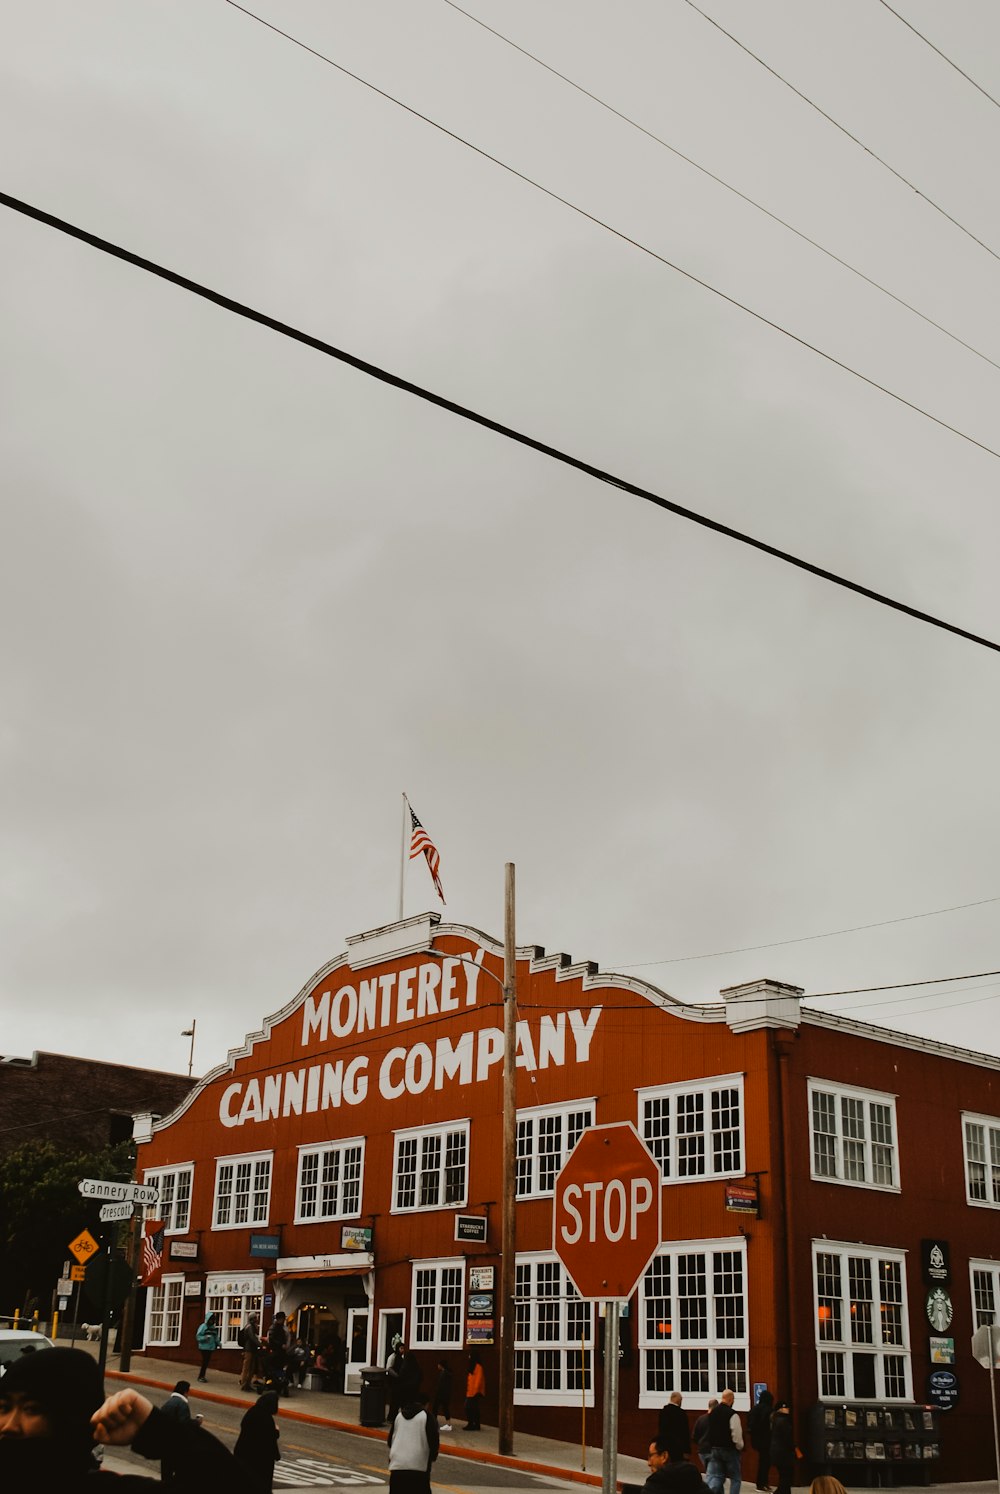 pessoas caminhando perto do edifício da empresa de conservas de Monterey durante o dia